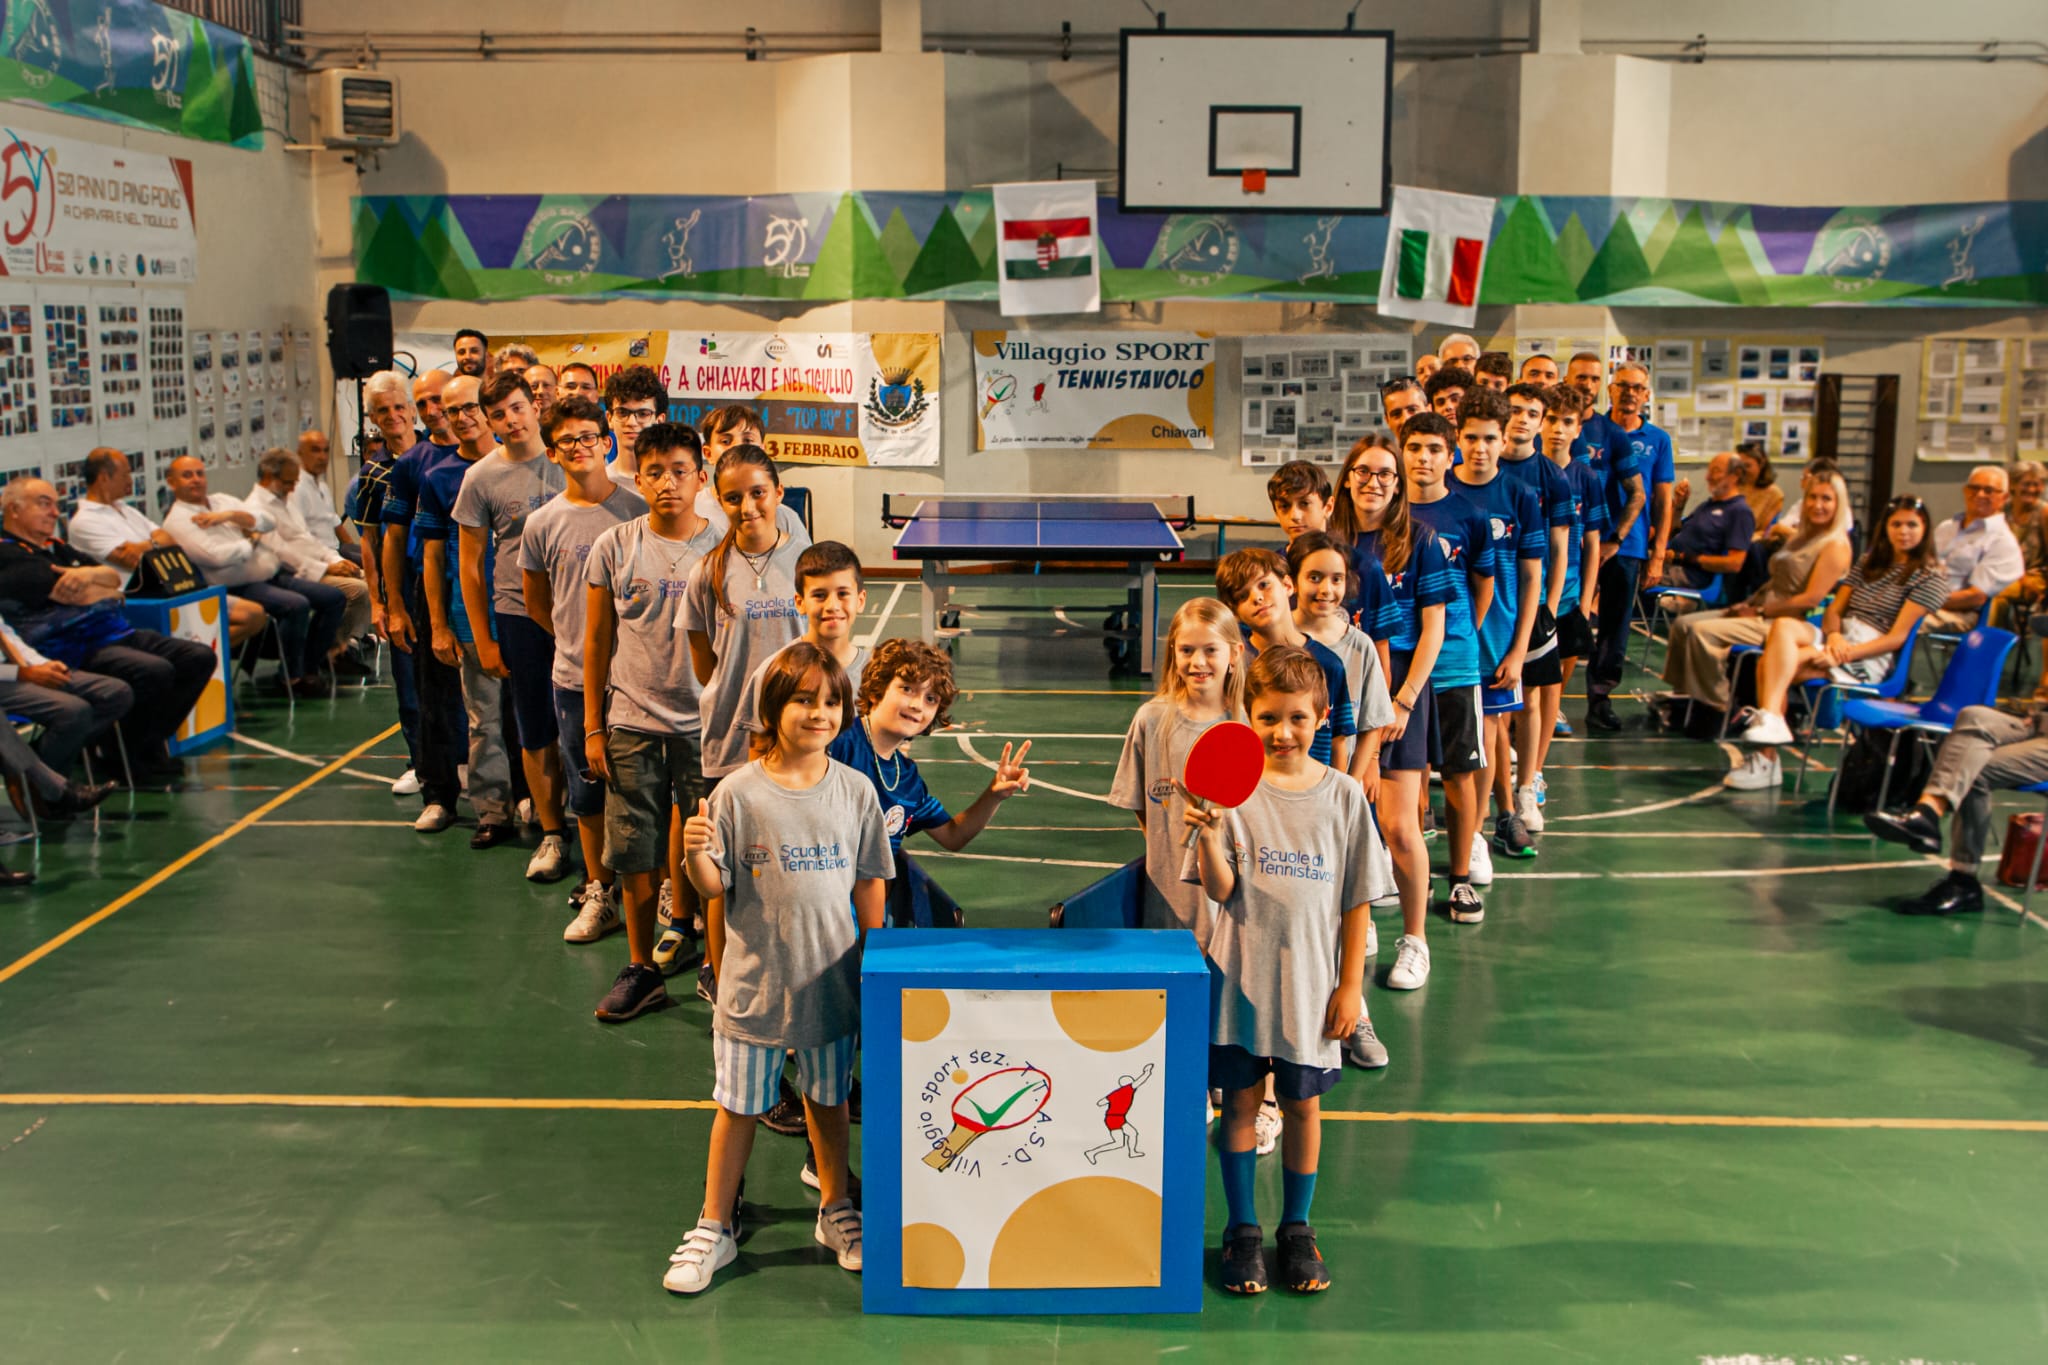 Villaggio Sport Tennistavolo Chiavari festeggiamenti per i 50 anni gruppo ragazzi